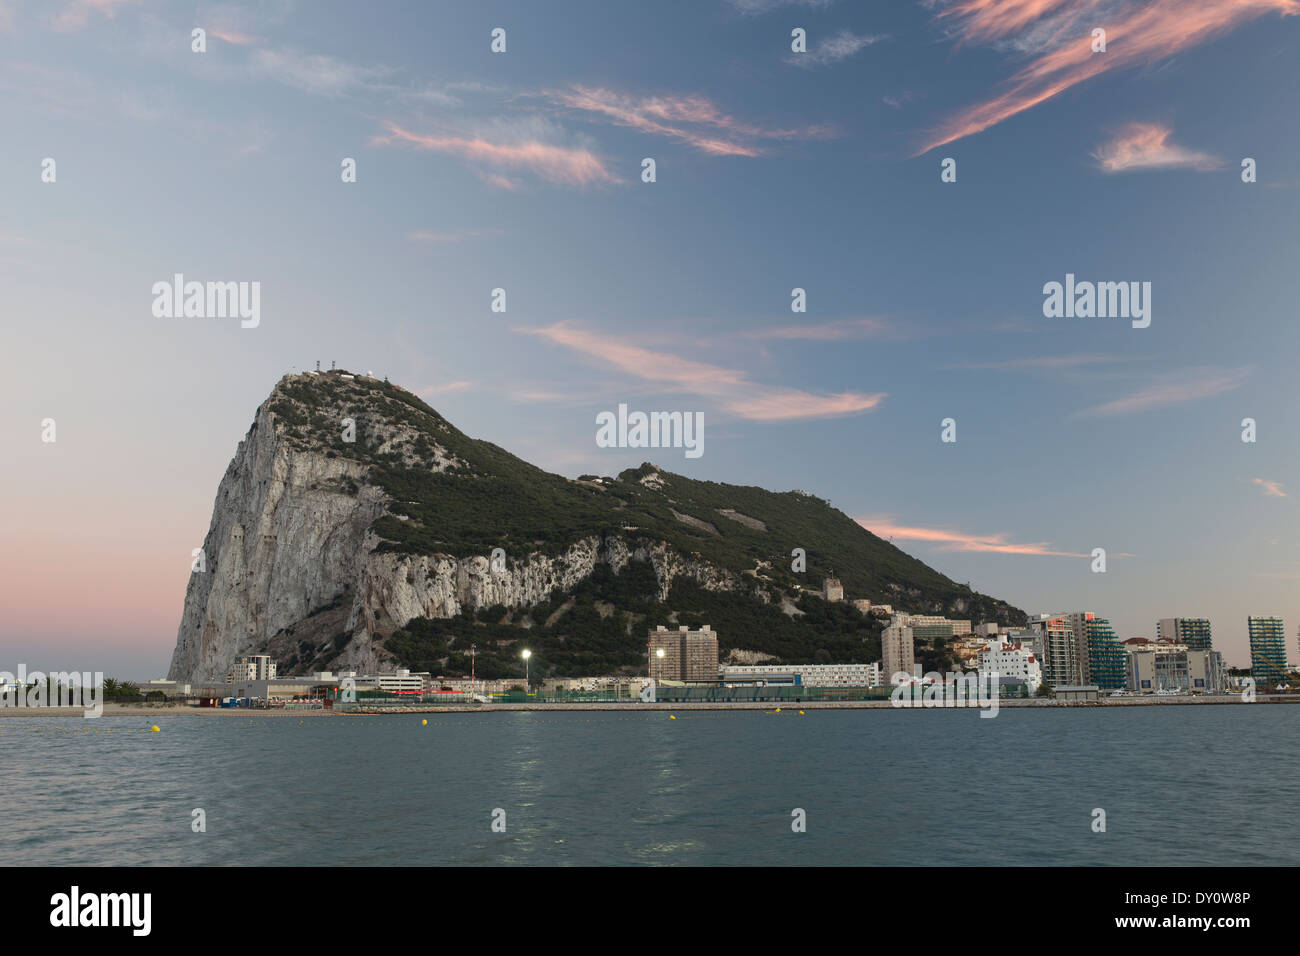 Le rocher de Gibraltar au coucher du soleil Banque D'Images